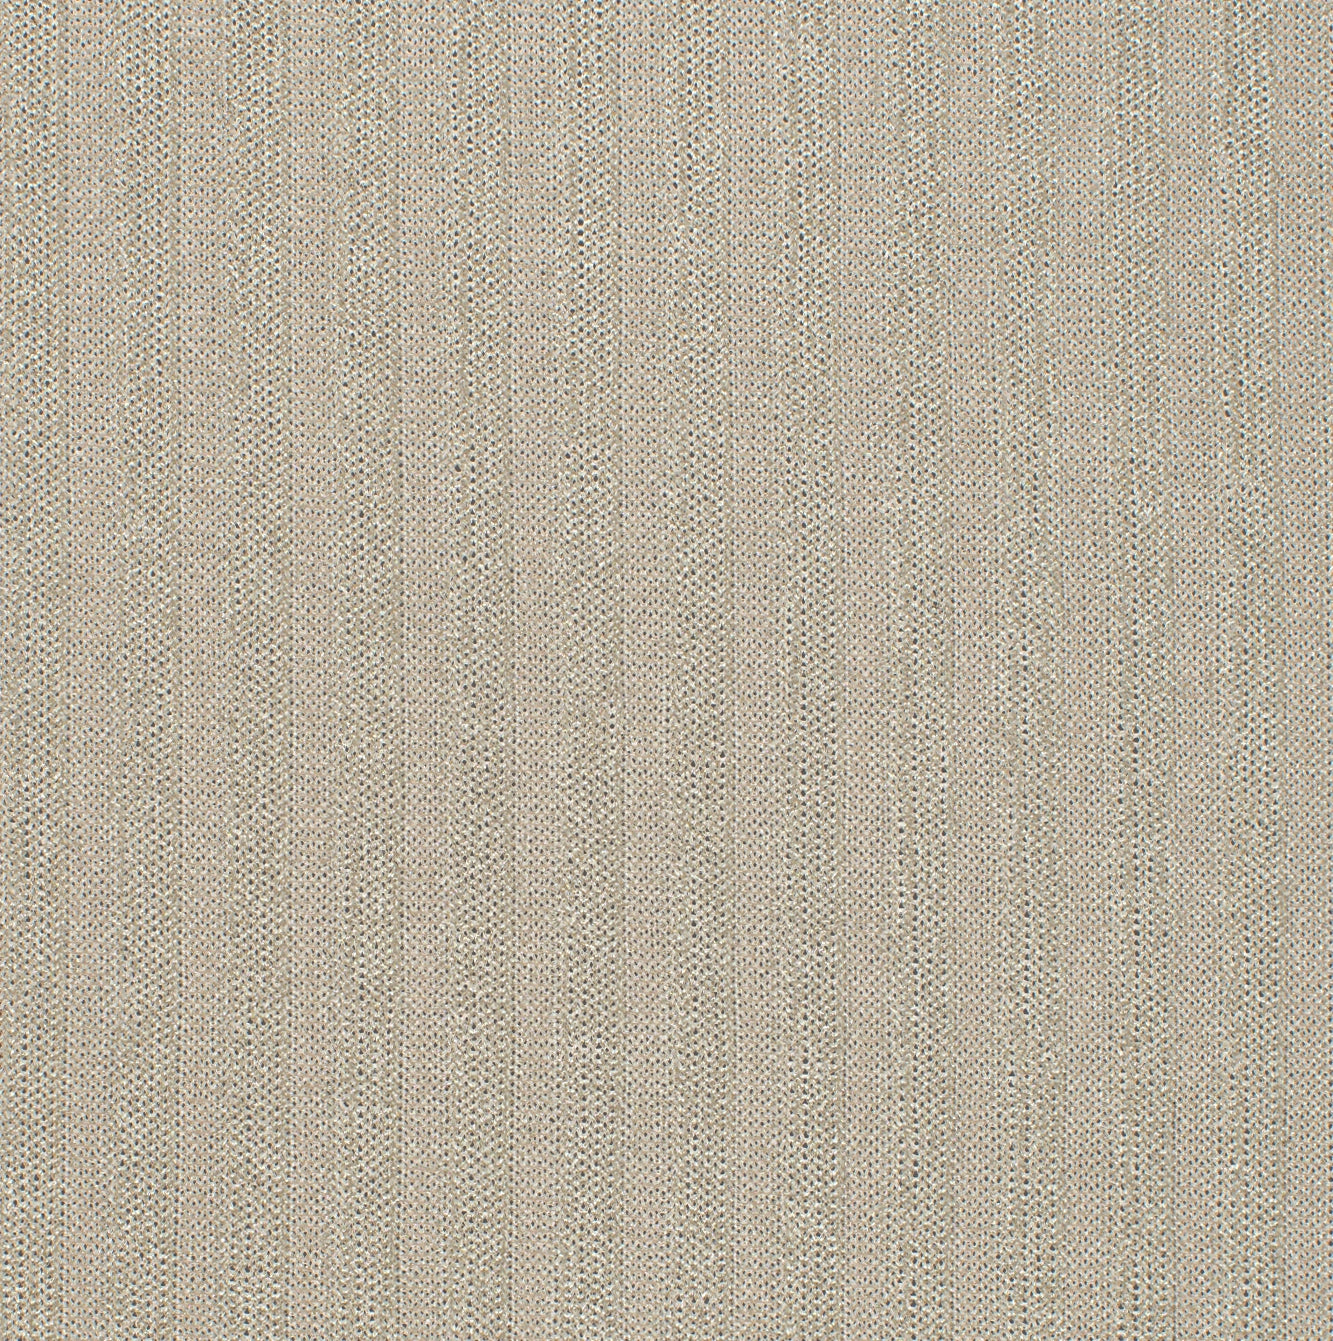 16025-06 Ivory, Gold Knit Rib Foil Plain Dyed Blend beige blend foil gold knit plain dyed polyester rib spandex Foil, Rib - knit fabric - woven fabric - fabric company - fabric wholesale - fabric b2b - fabric factory - high quality fabric - hong kong fabric - fabric hk - acetate fabric - cotton fabric - linen fabric - metallic fabric - nylon fabric - polyester fabric - spandex fabric - chun wing hing - cwh hk - fabric worldwide ship - 針織布 - 梳織布 - 布料公司- 布料批發 - 香港布料 - 秦榮興